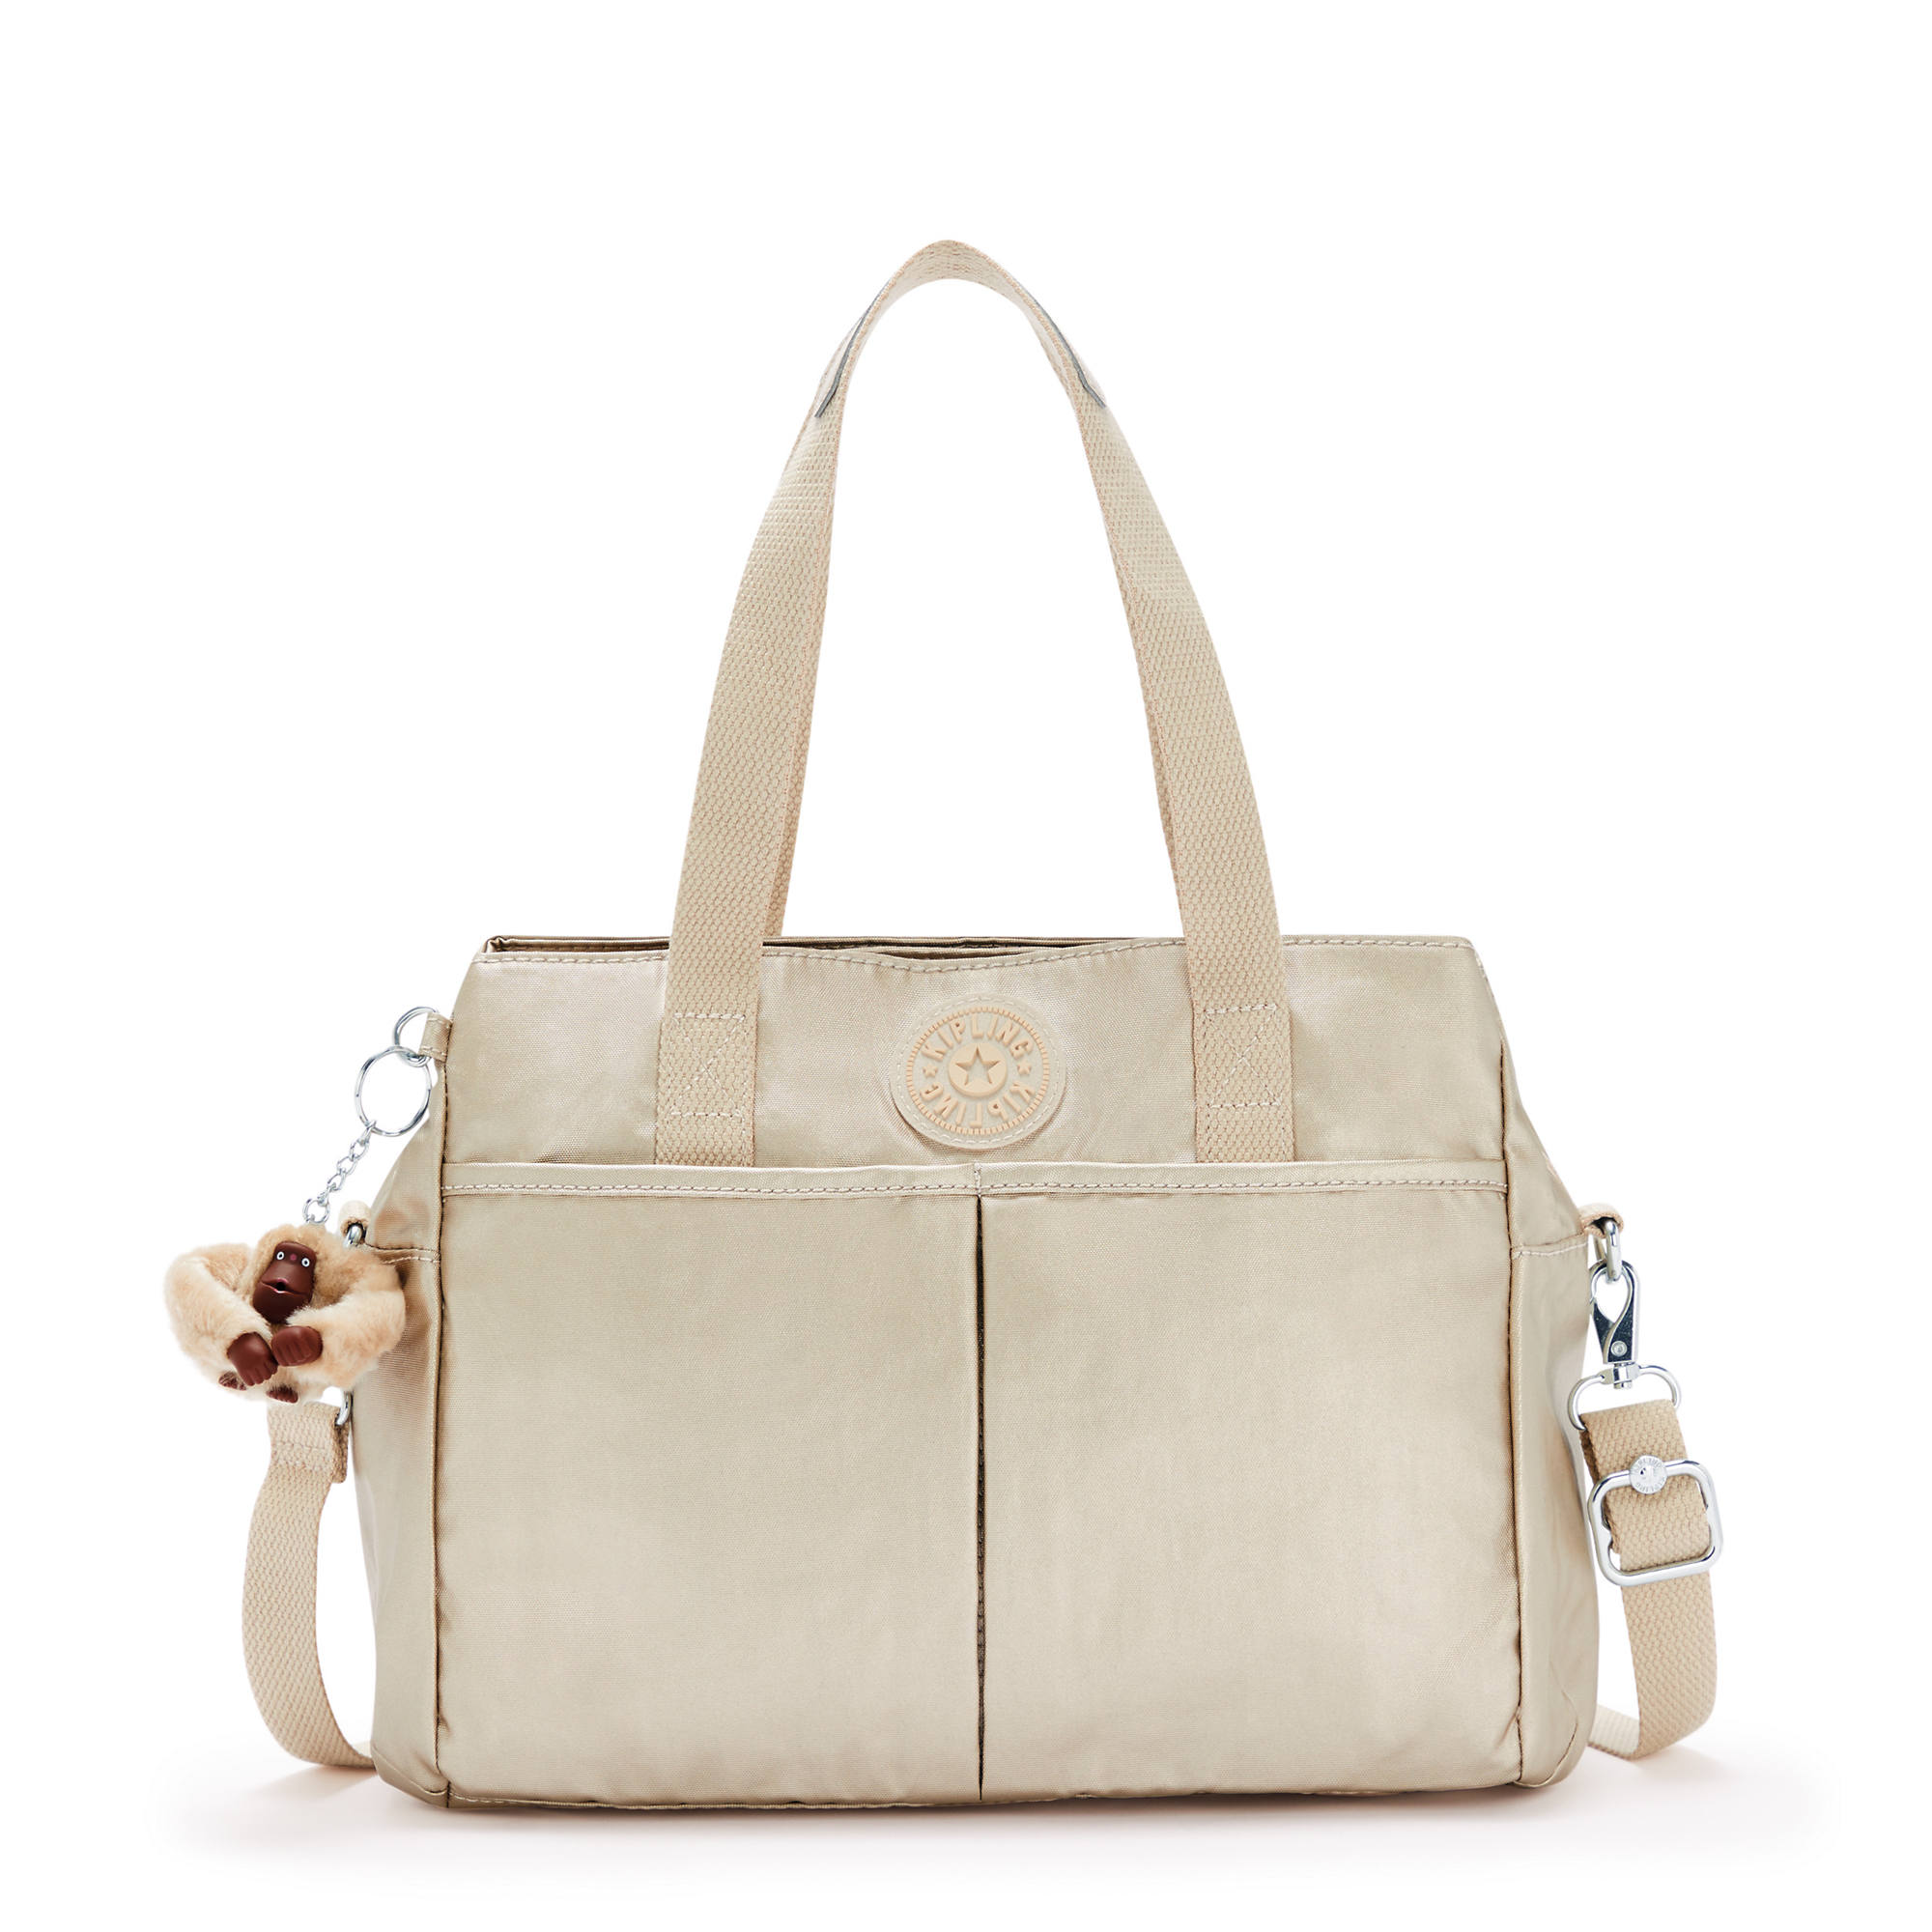 Kipling Kenzie Metallic Shoulder Bag | eBay